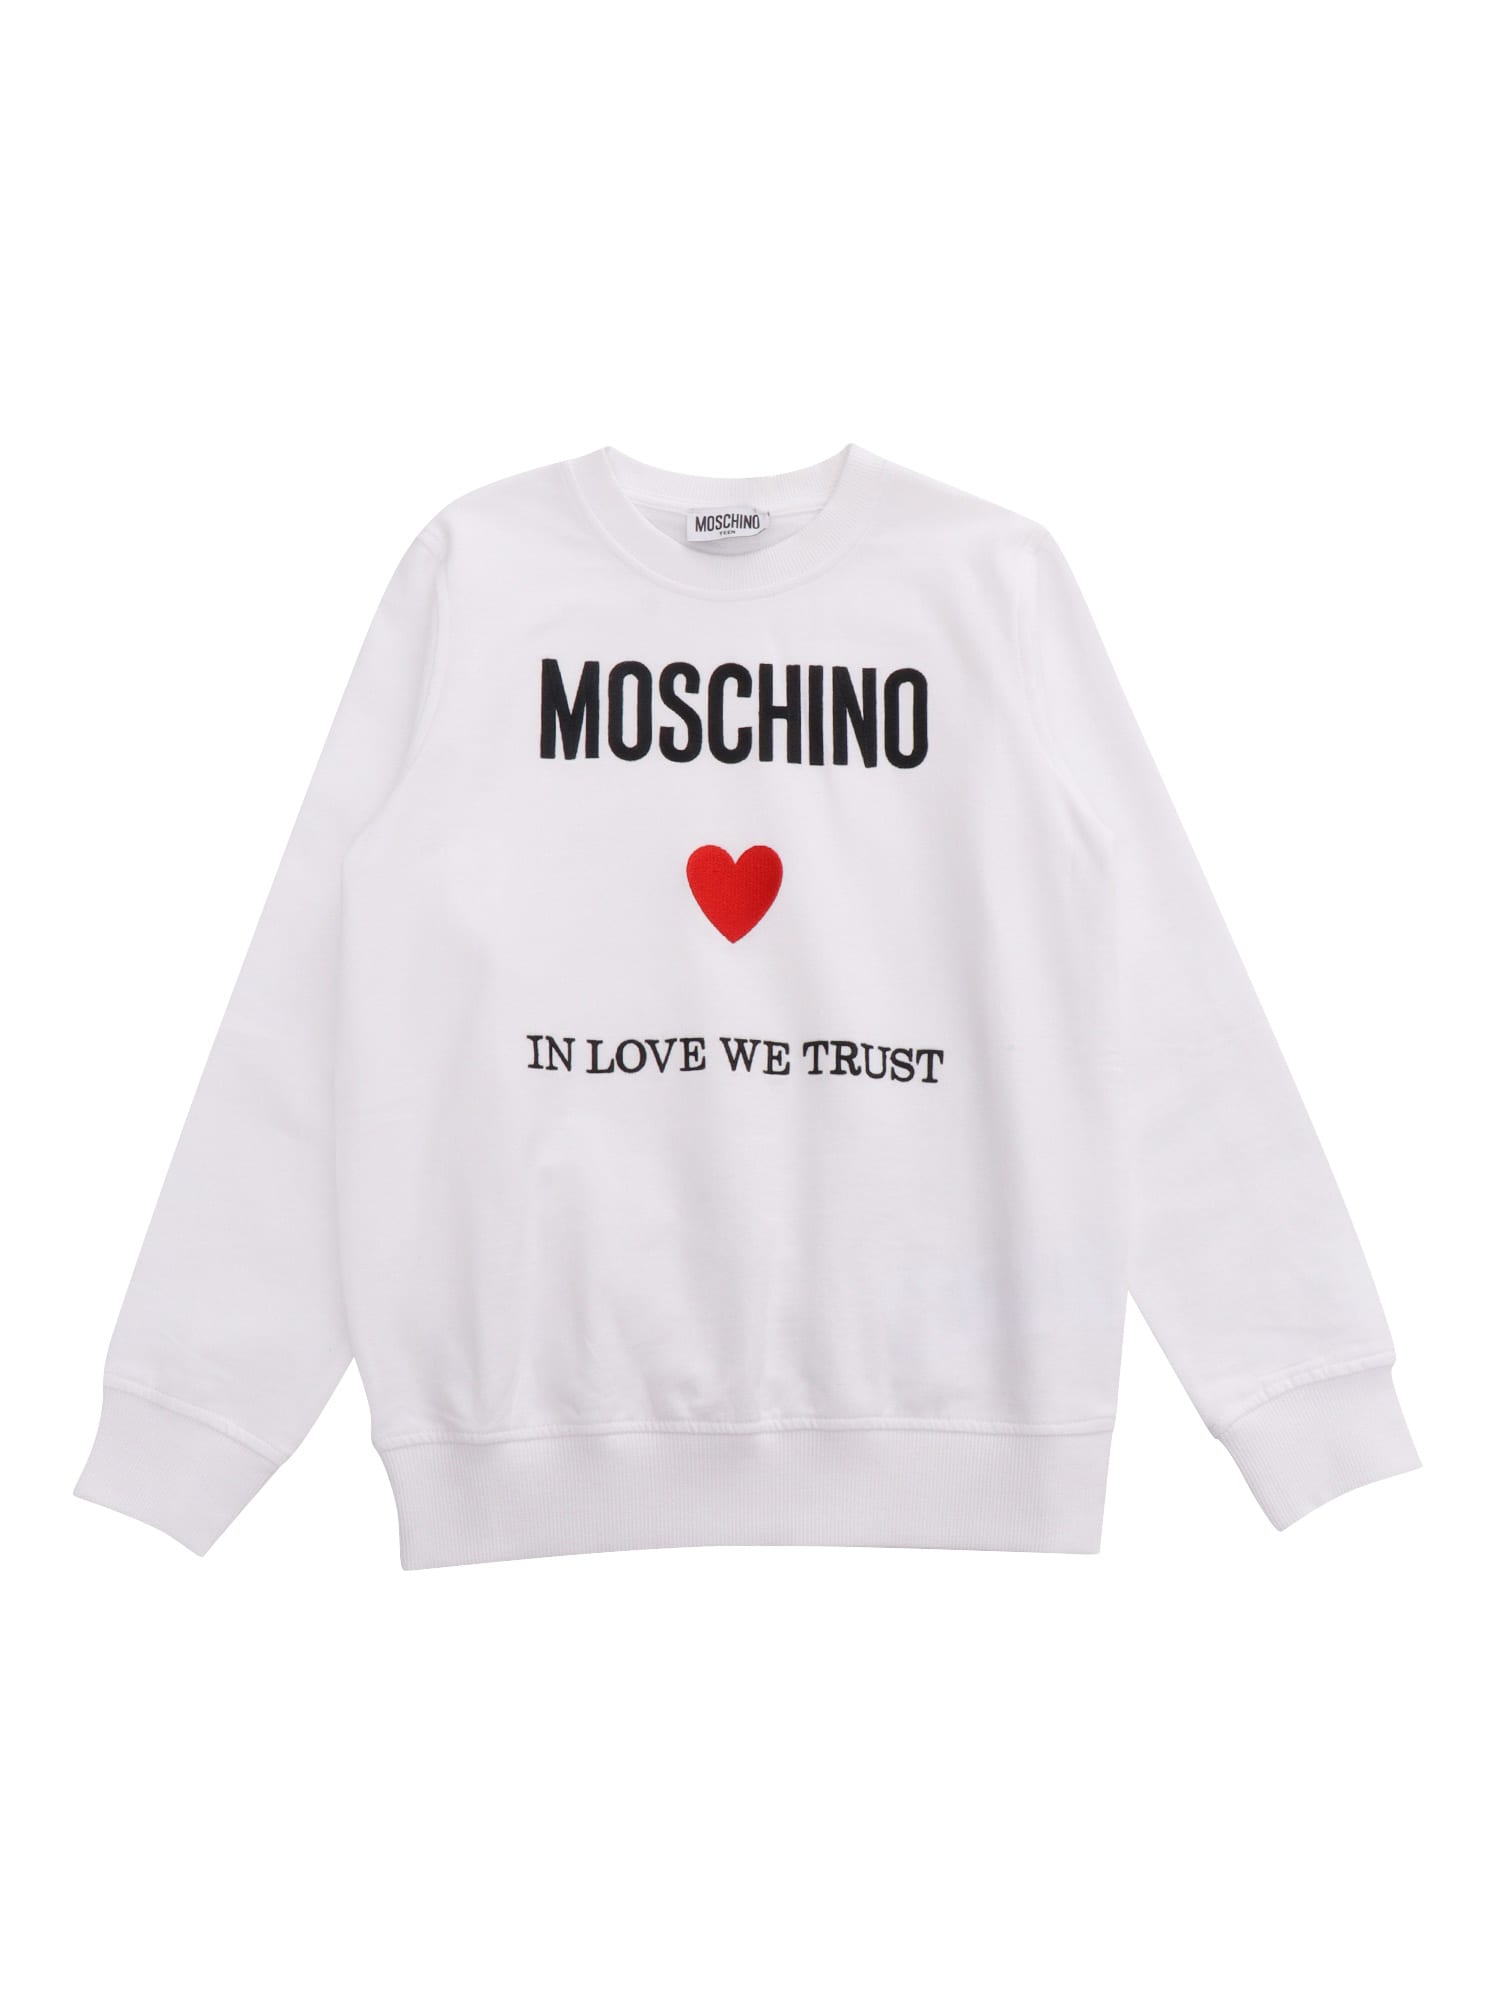 Moschino Kids' White Sweatshirt